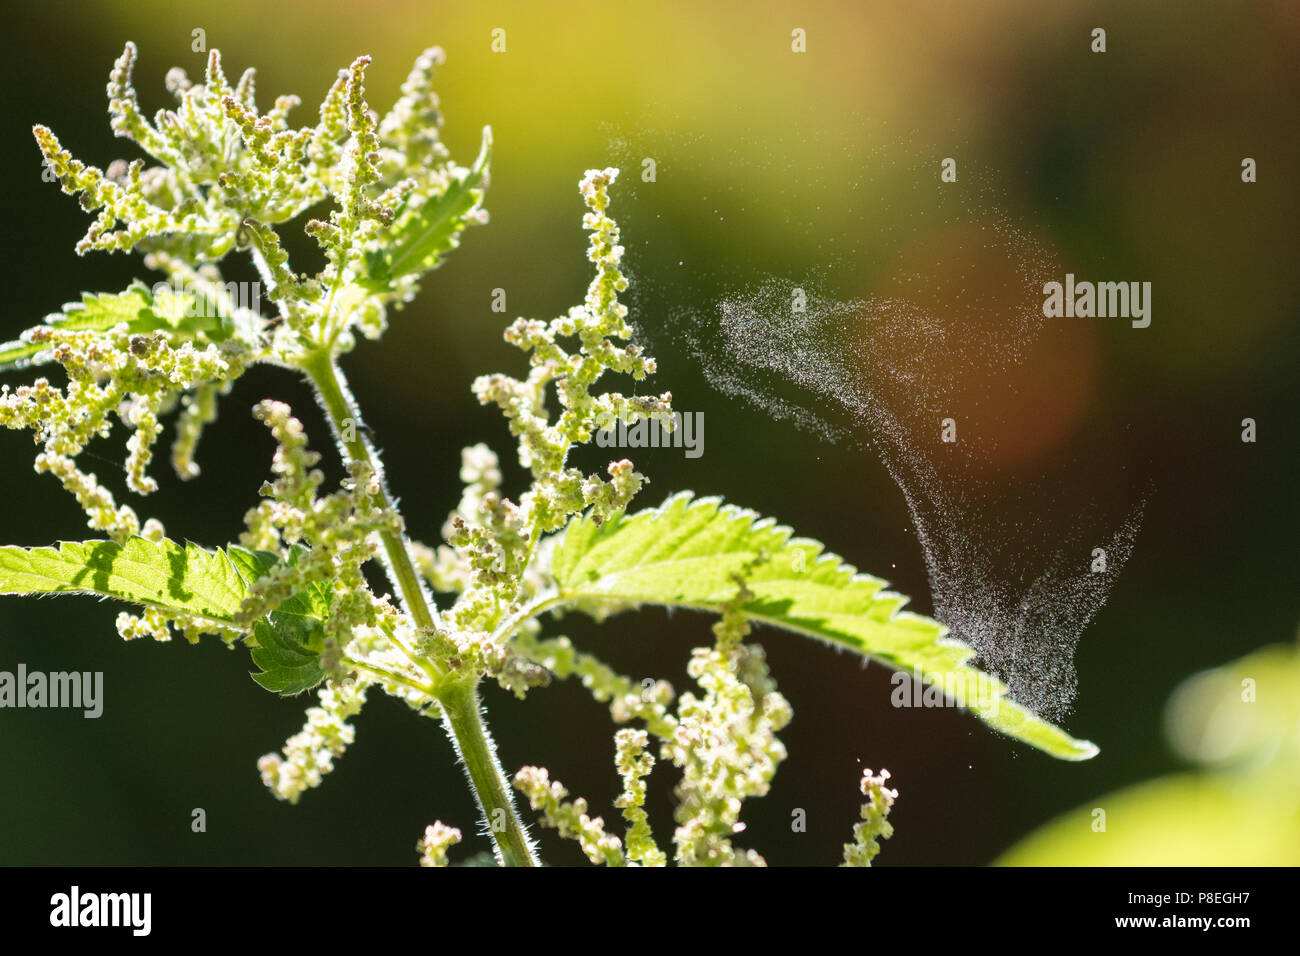 Impollinazione anemofila - la dispersione del polline da catapulta - ortica (Urtica dioica) scagliare il polline in un giorno asciutto Foto Stock